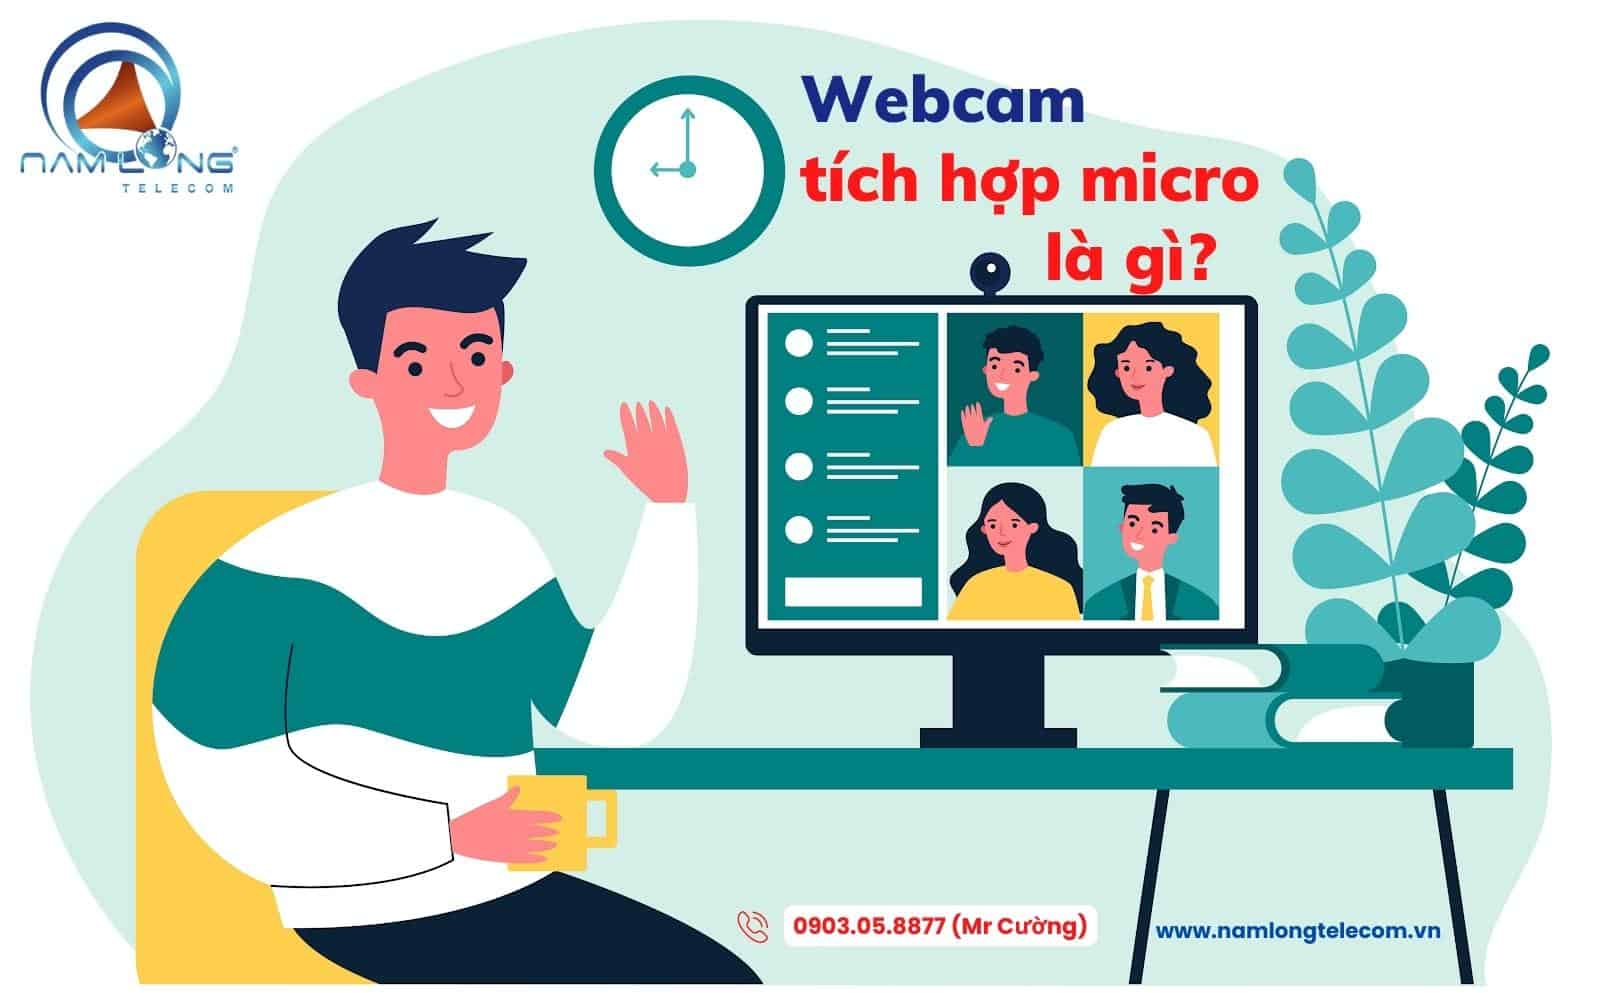 Webcam tích hợp micro, webcam hội nghị là gì?